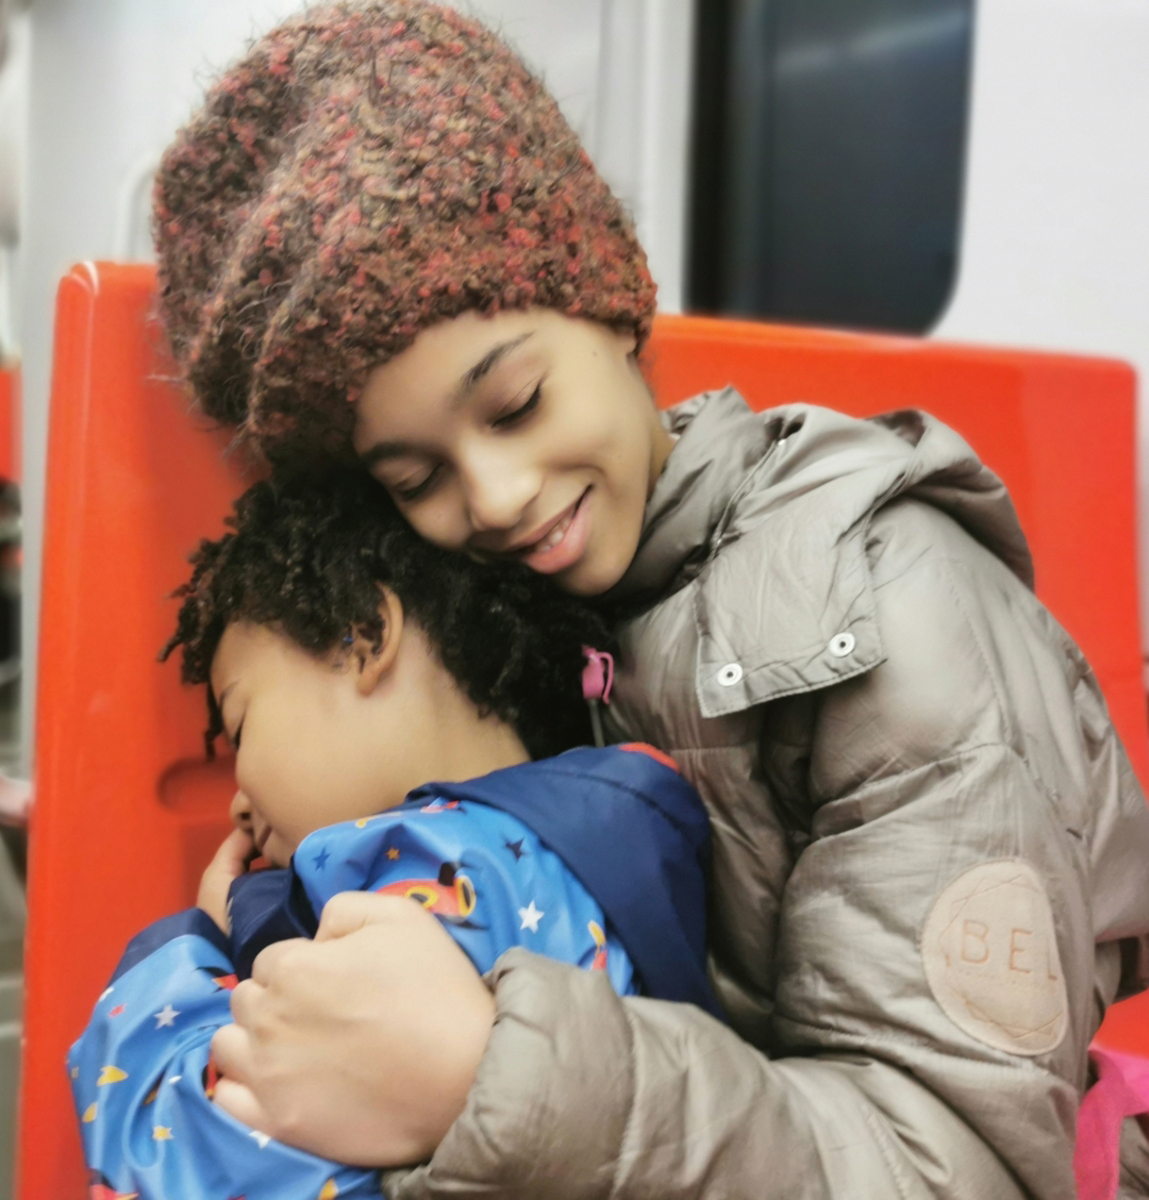 Sisarukset metrossa Helsingissä, kuvassa sisko halaa veljeä